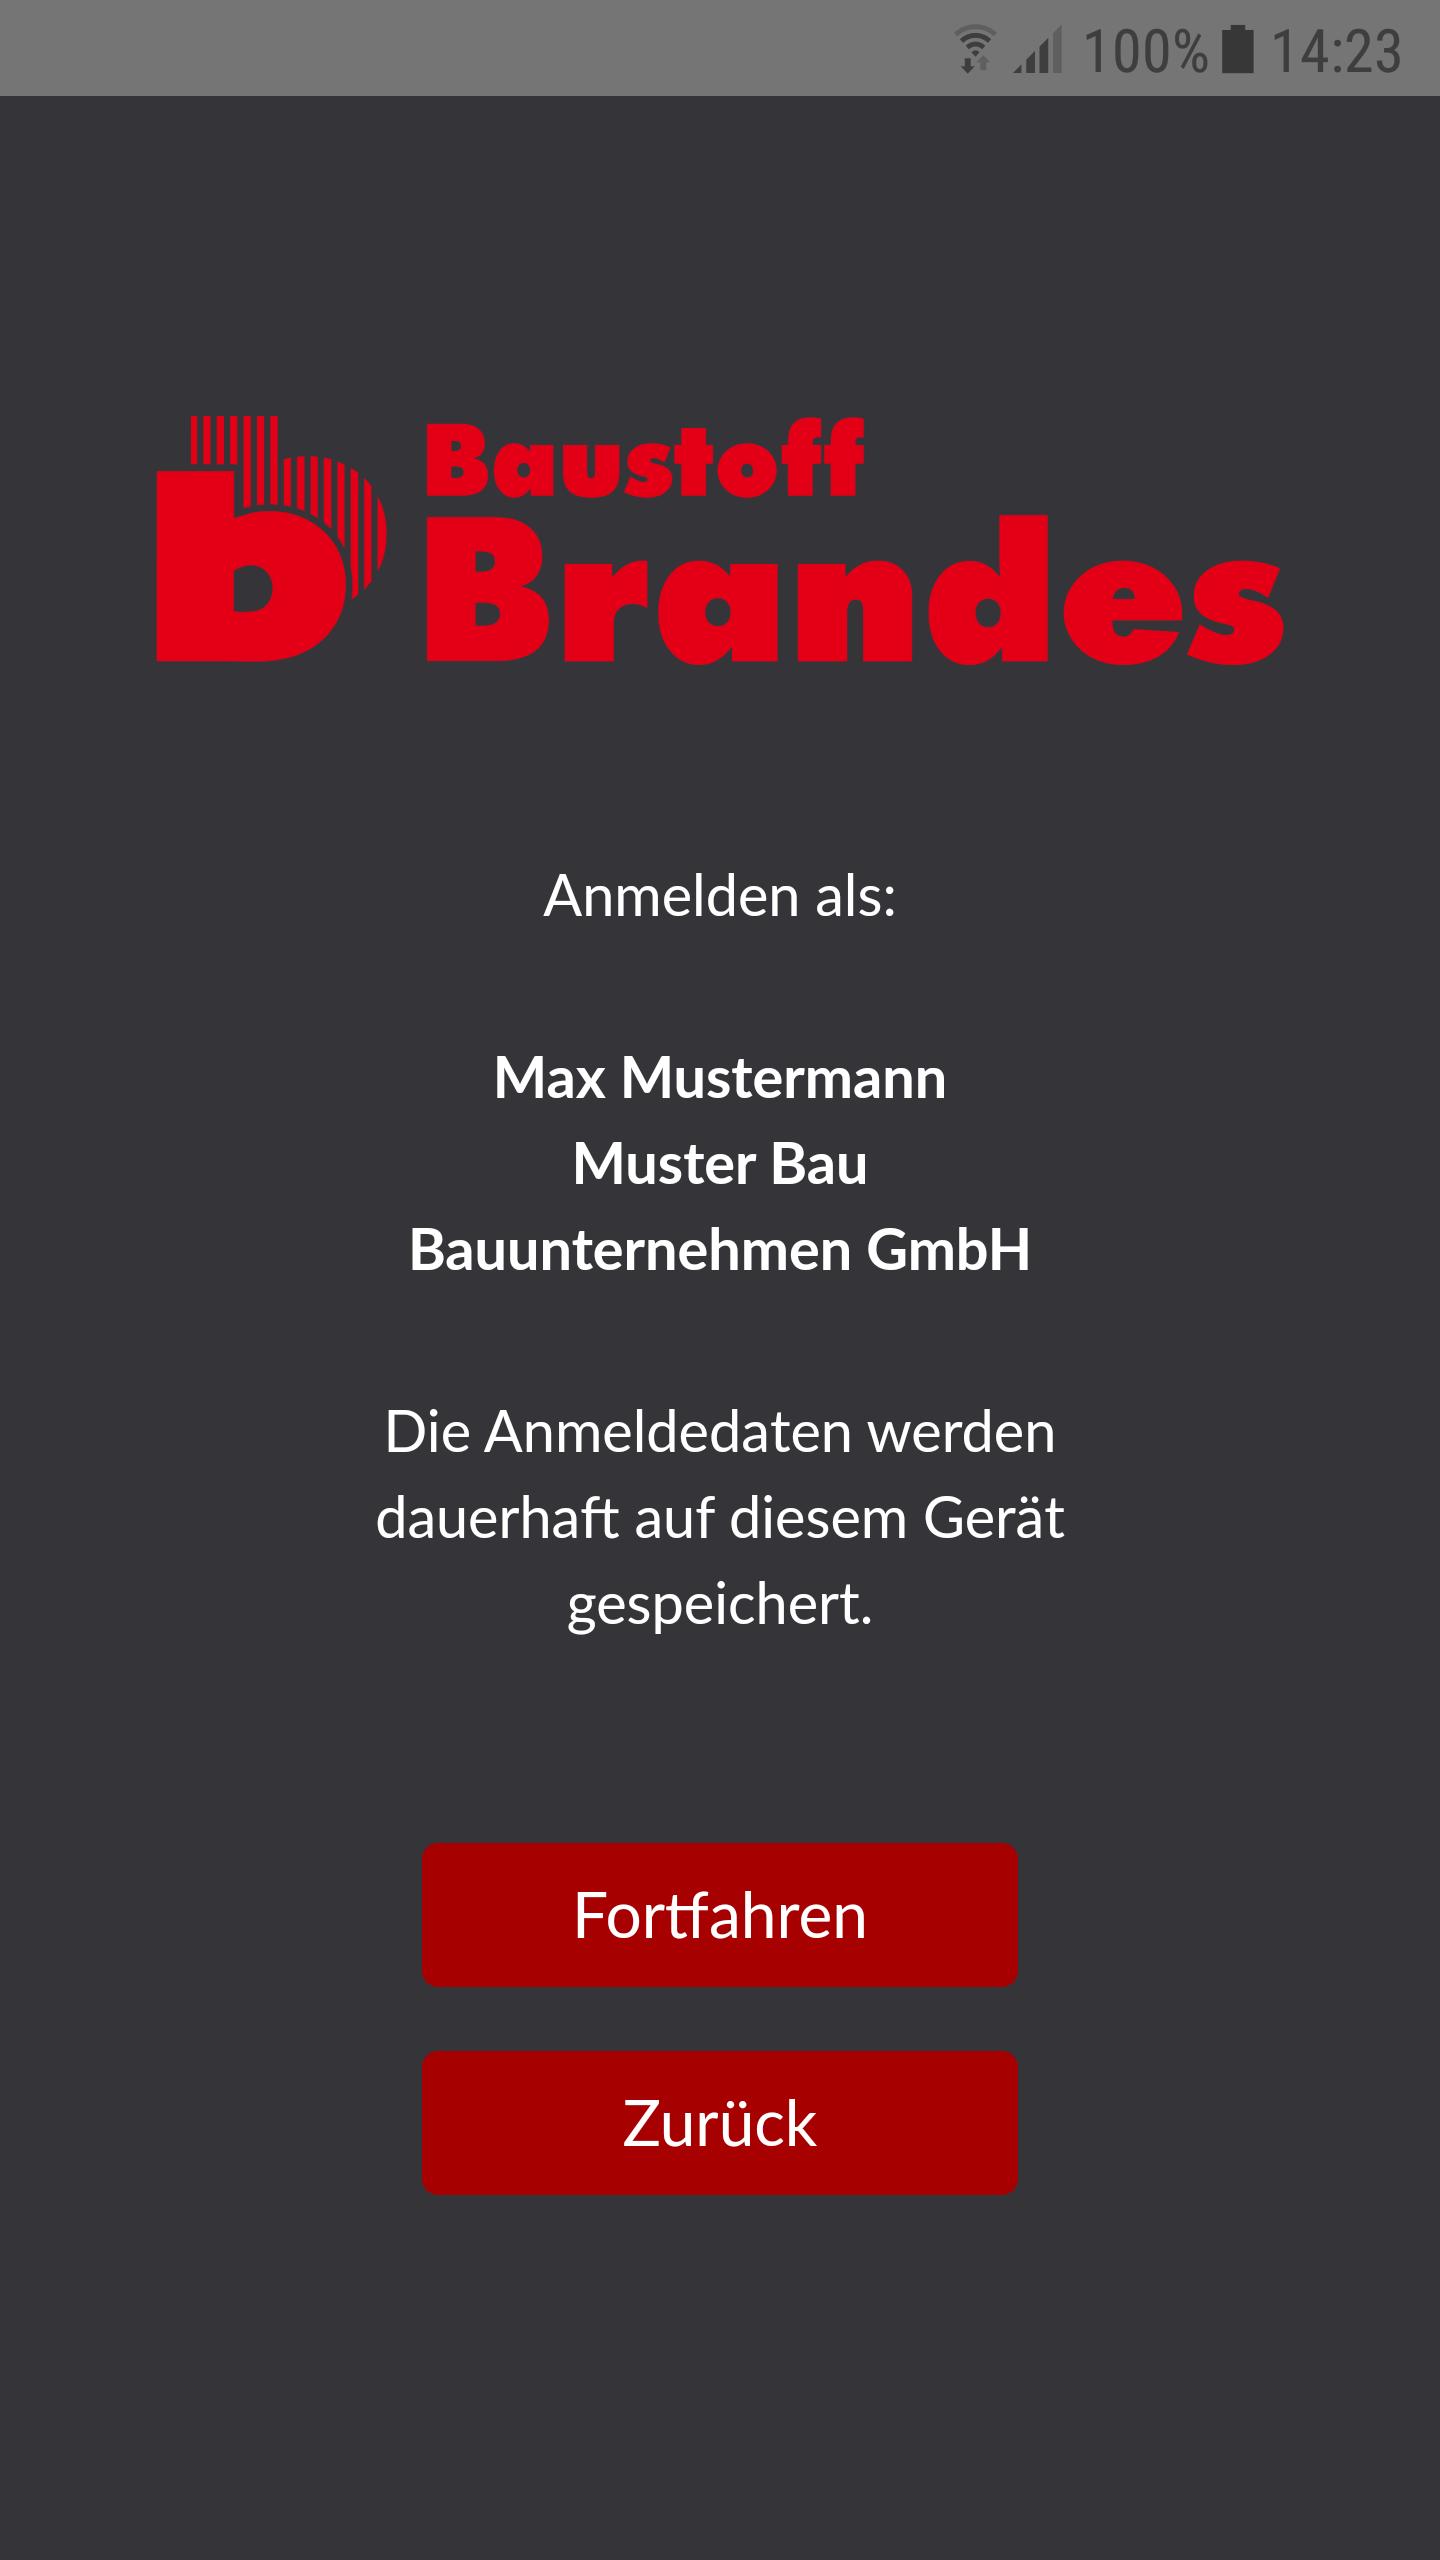 Baustoff Brandes for Android - APK Download